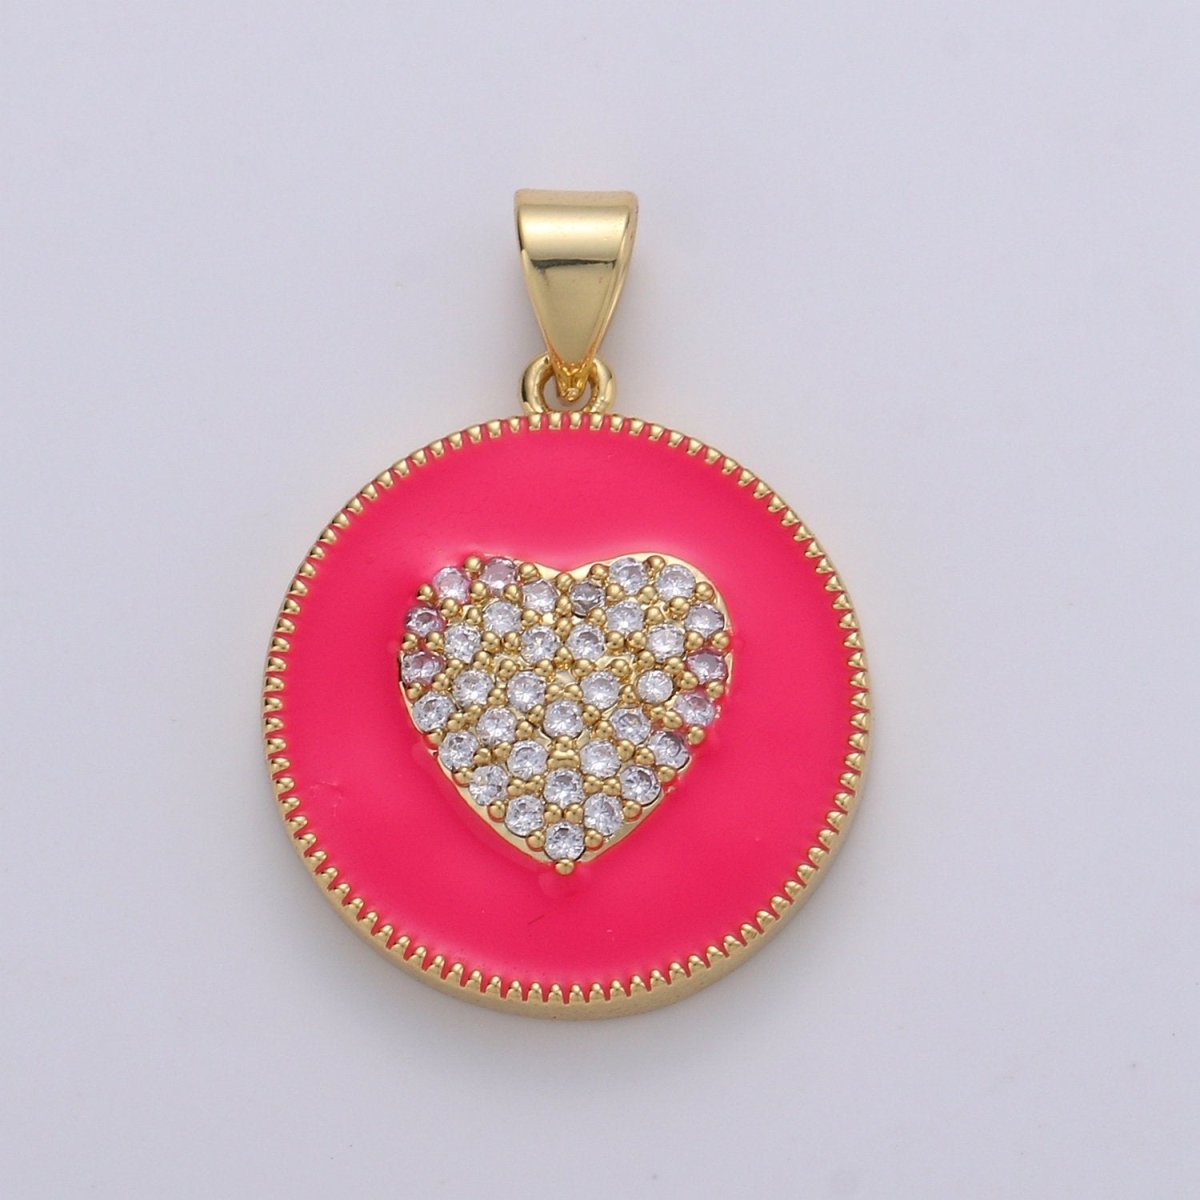 Micro Pave Pink Enamel Heart Charm Pendant, Enamel Heart Pendant, 14K gold Filled Heart Charm Blue Red Heart Pendant for Necklace Bracelet, J39/40/41 - DLUXCA